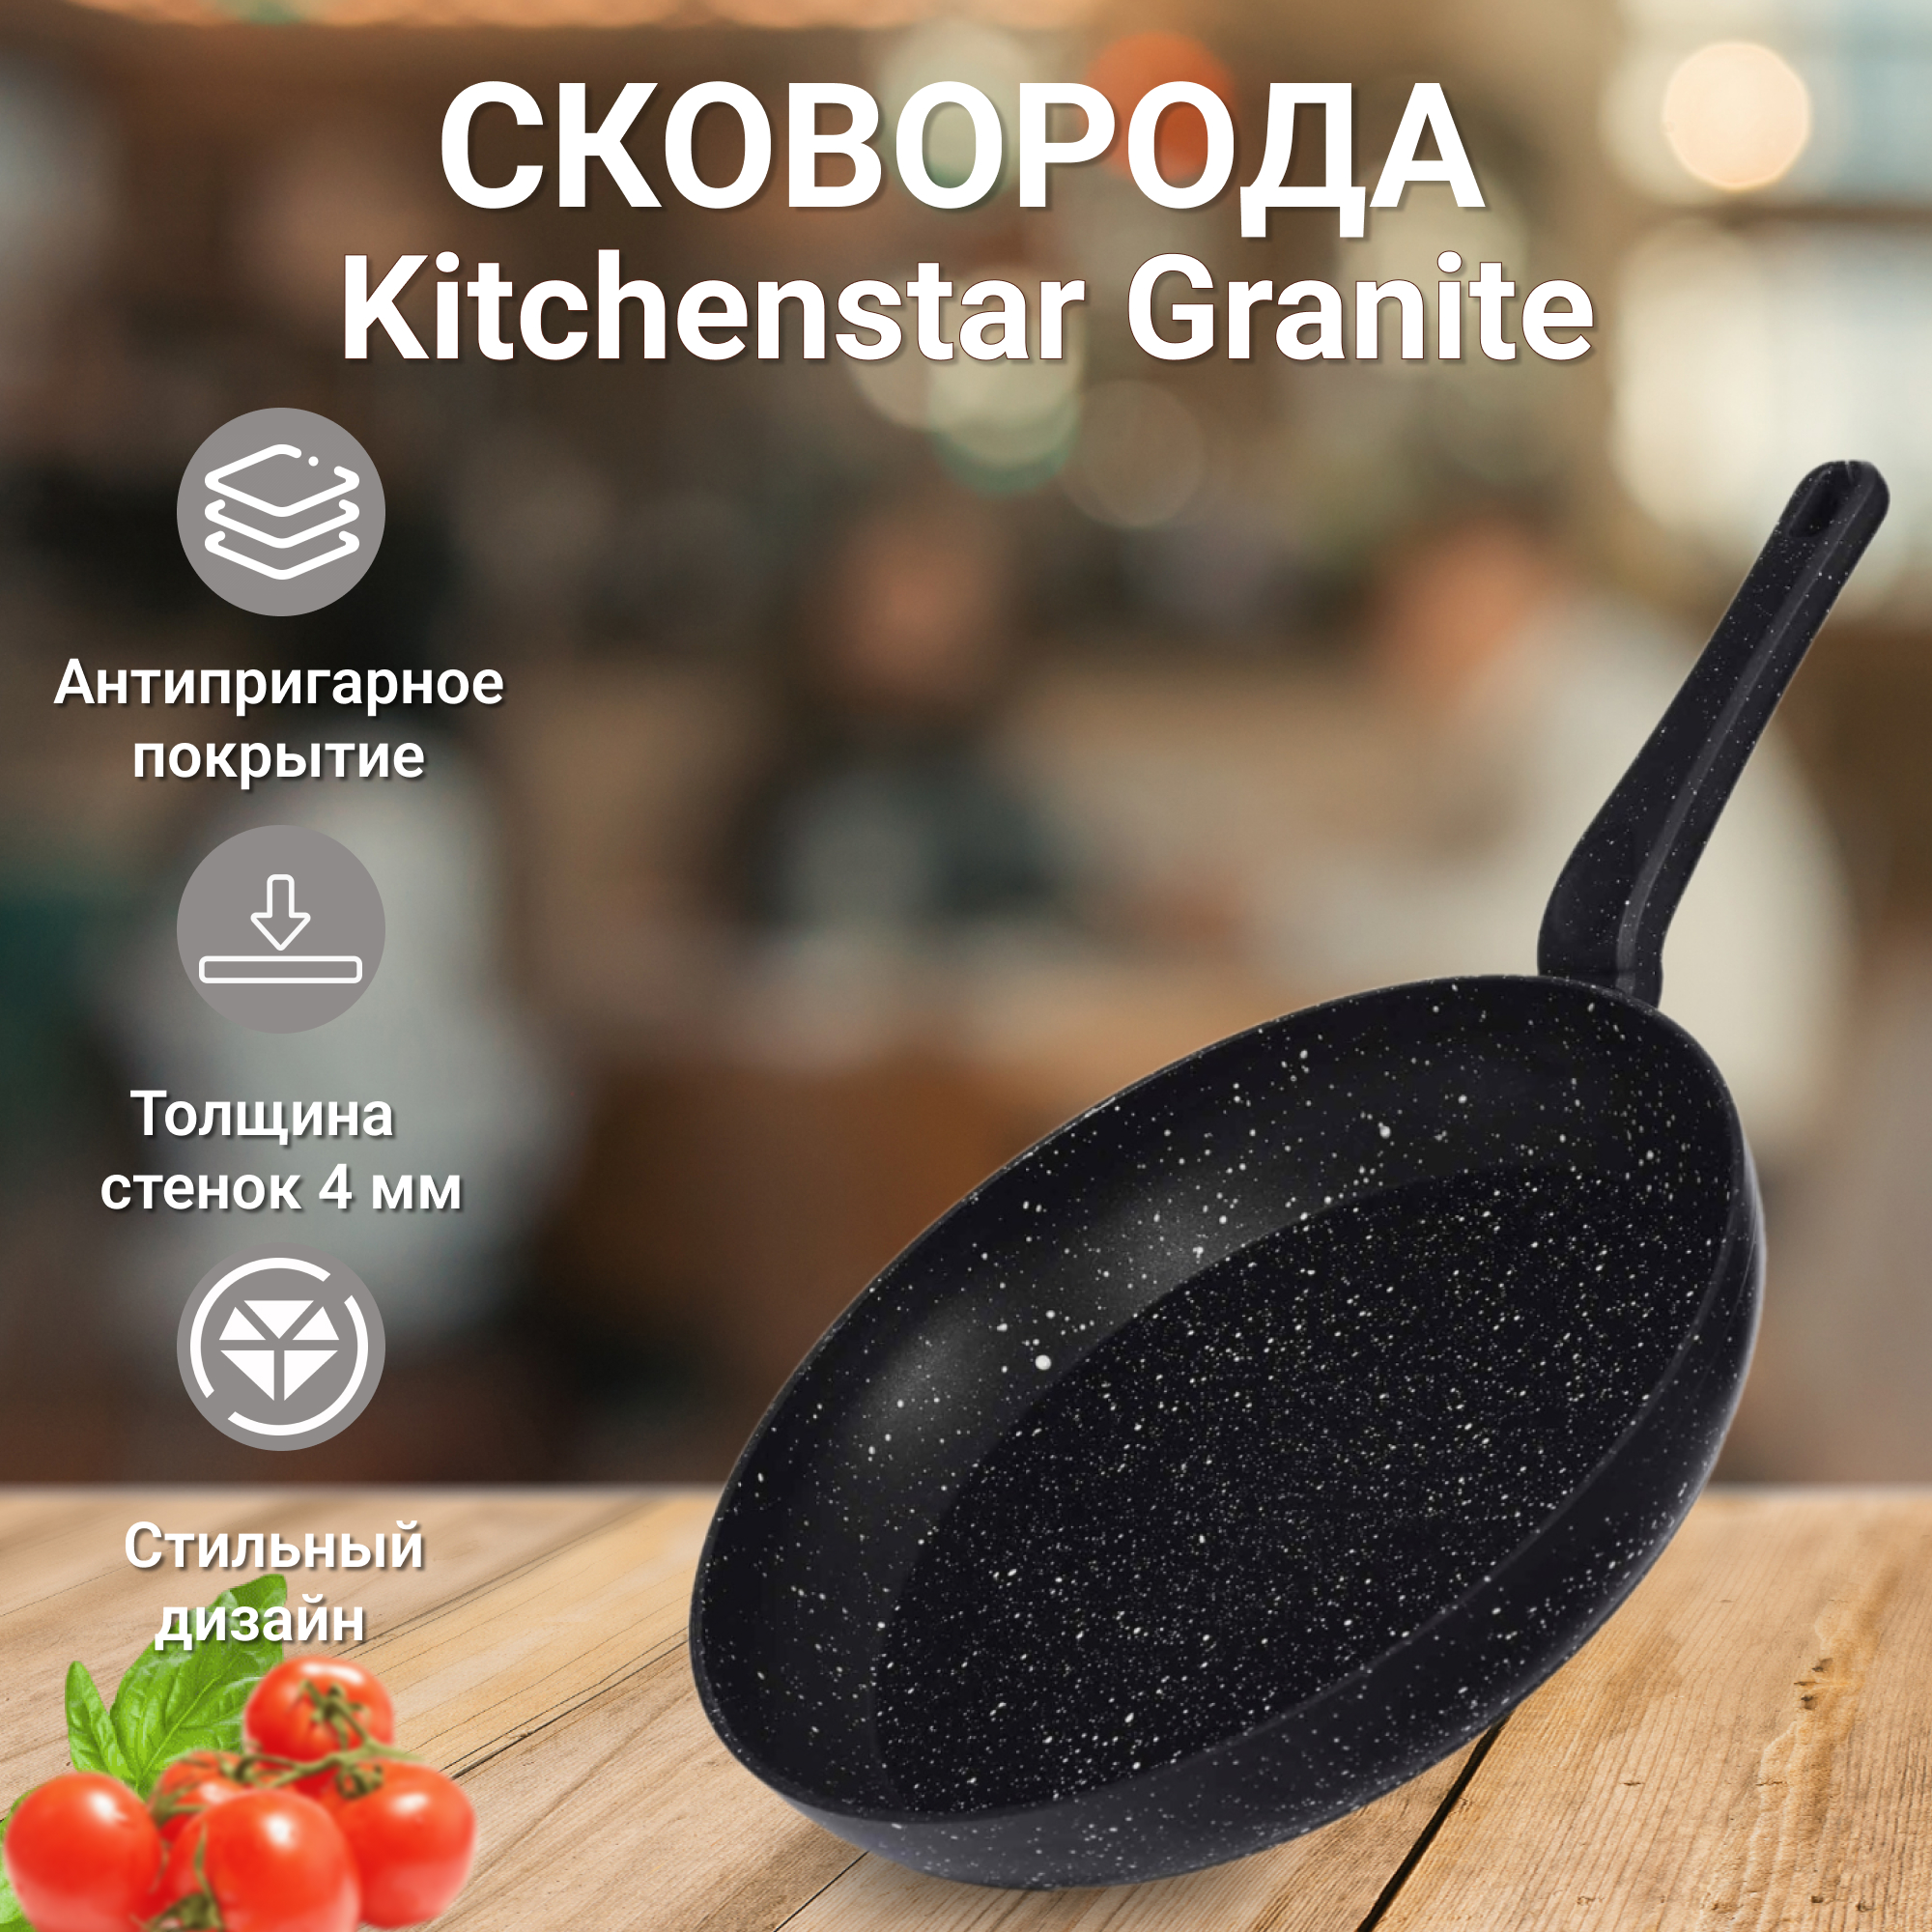 Сковорода Kitchenstar Granite с крышкой черная 30 см, цвет черный - фото 2